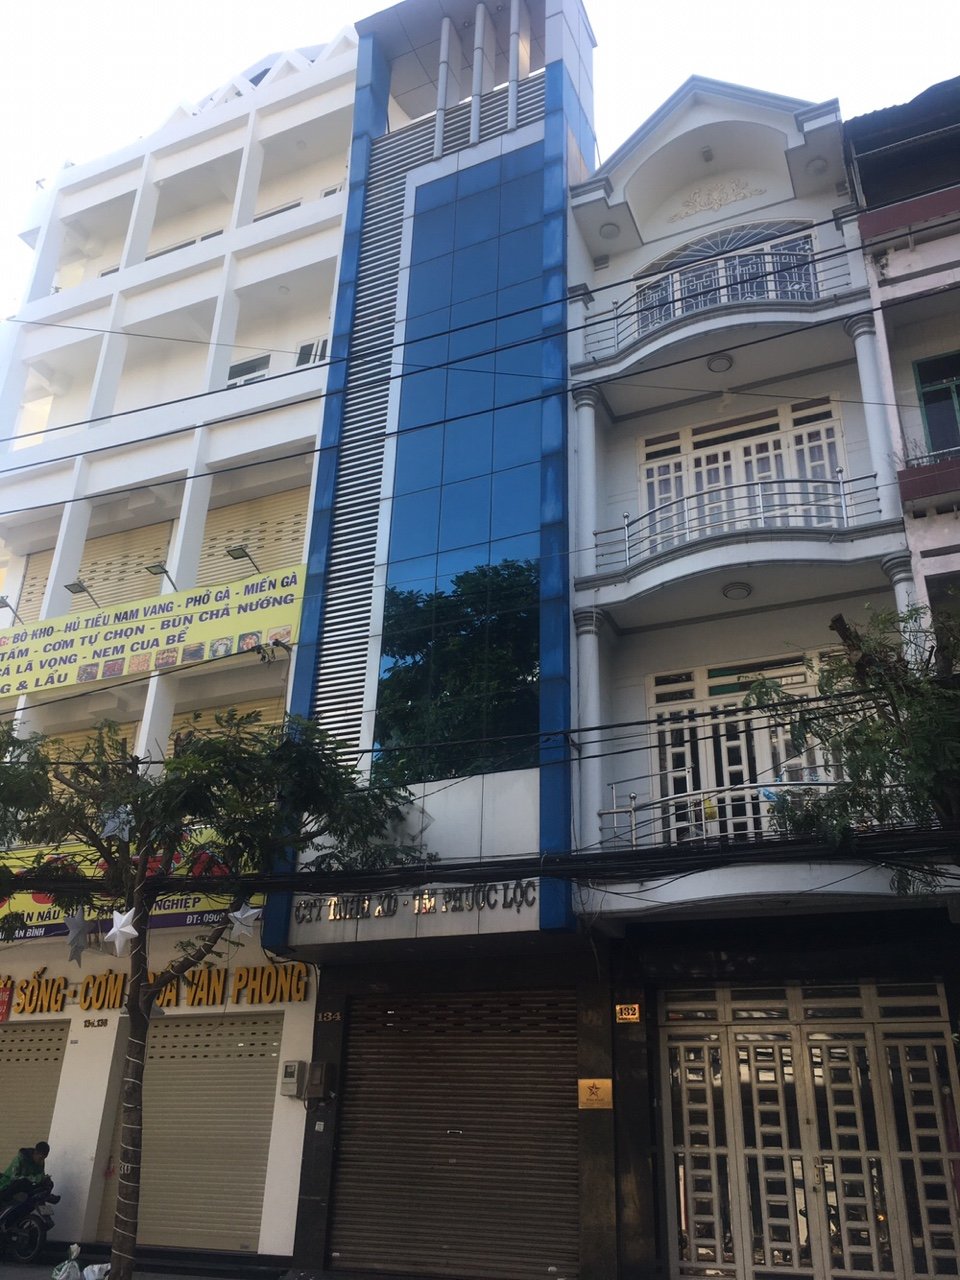 Chủ nhà kẹt tiền ngân hàng nên cần bán gấp nhà mặt tiền đường Cao Thắng, phường 2, quận 3.